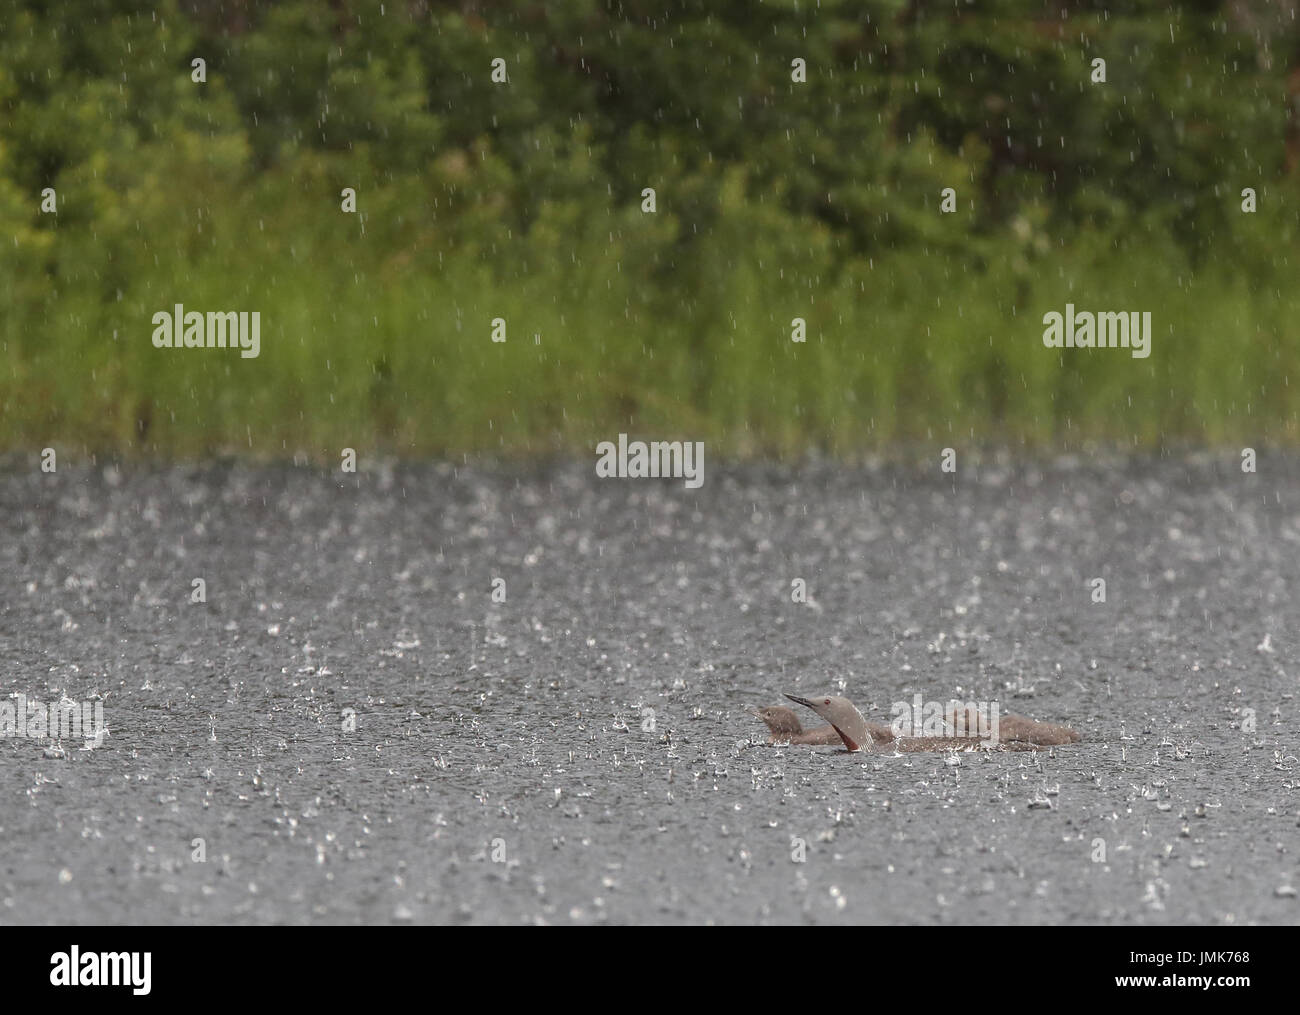 Rotkehltaucher, Rotkehltaucher, schwimmend im Regen. Seetaucher in Regenguss Stockfoto